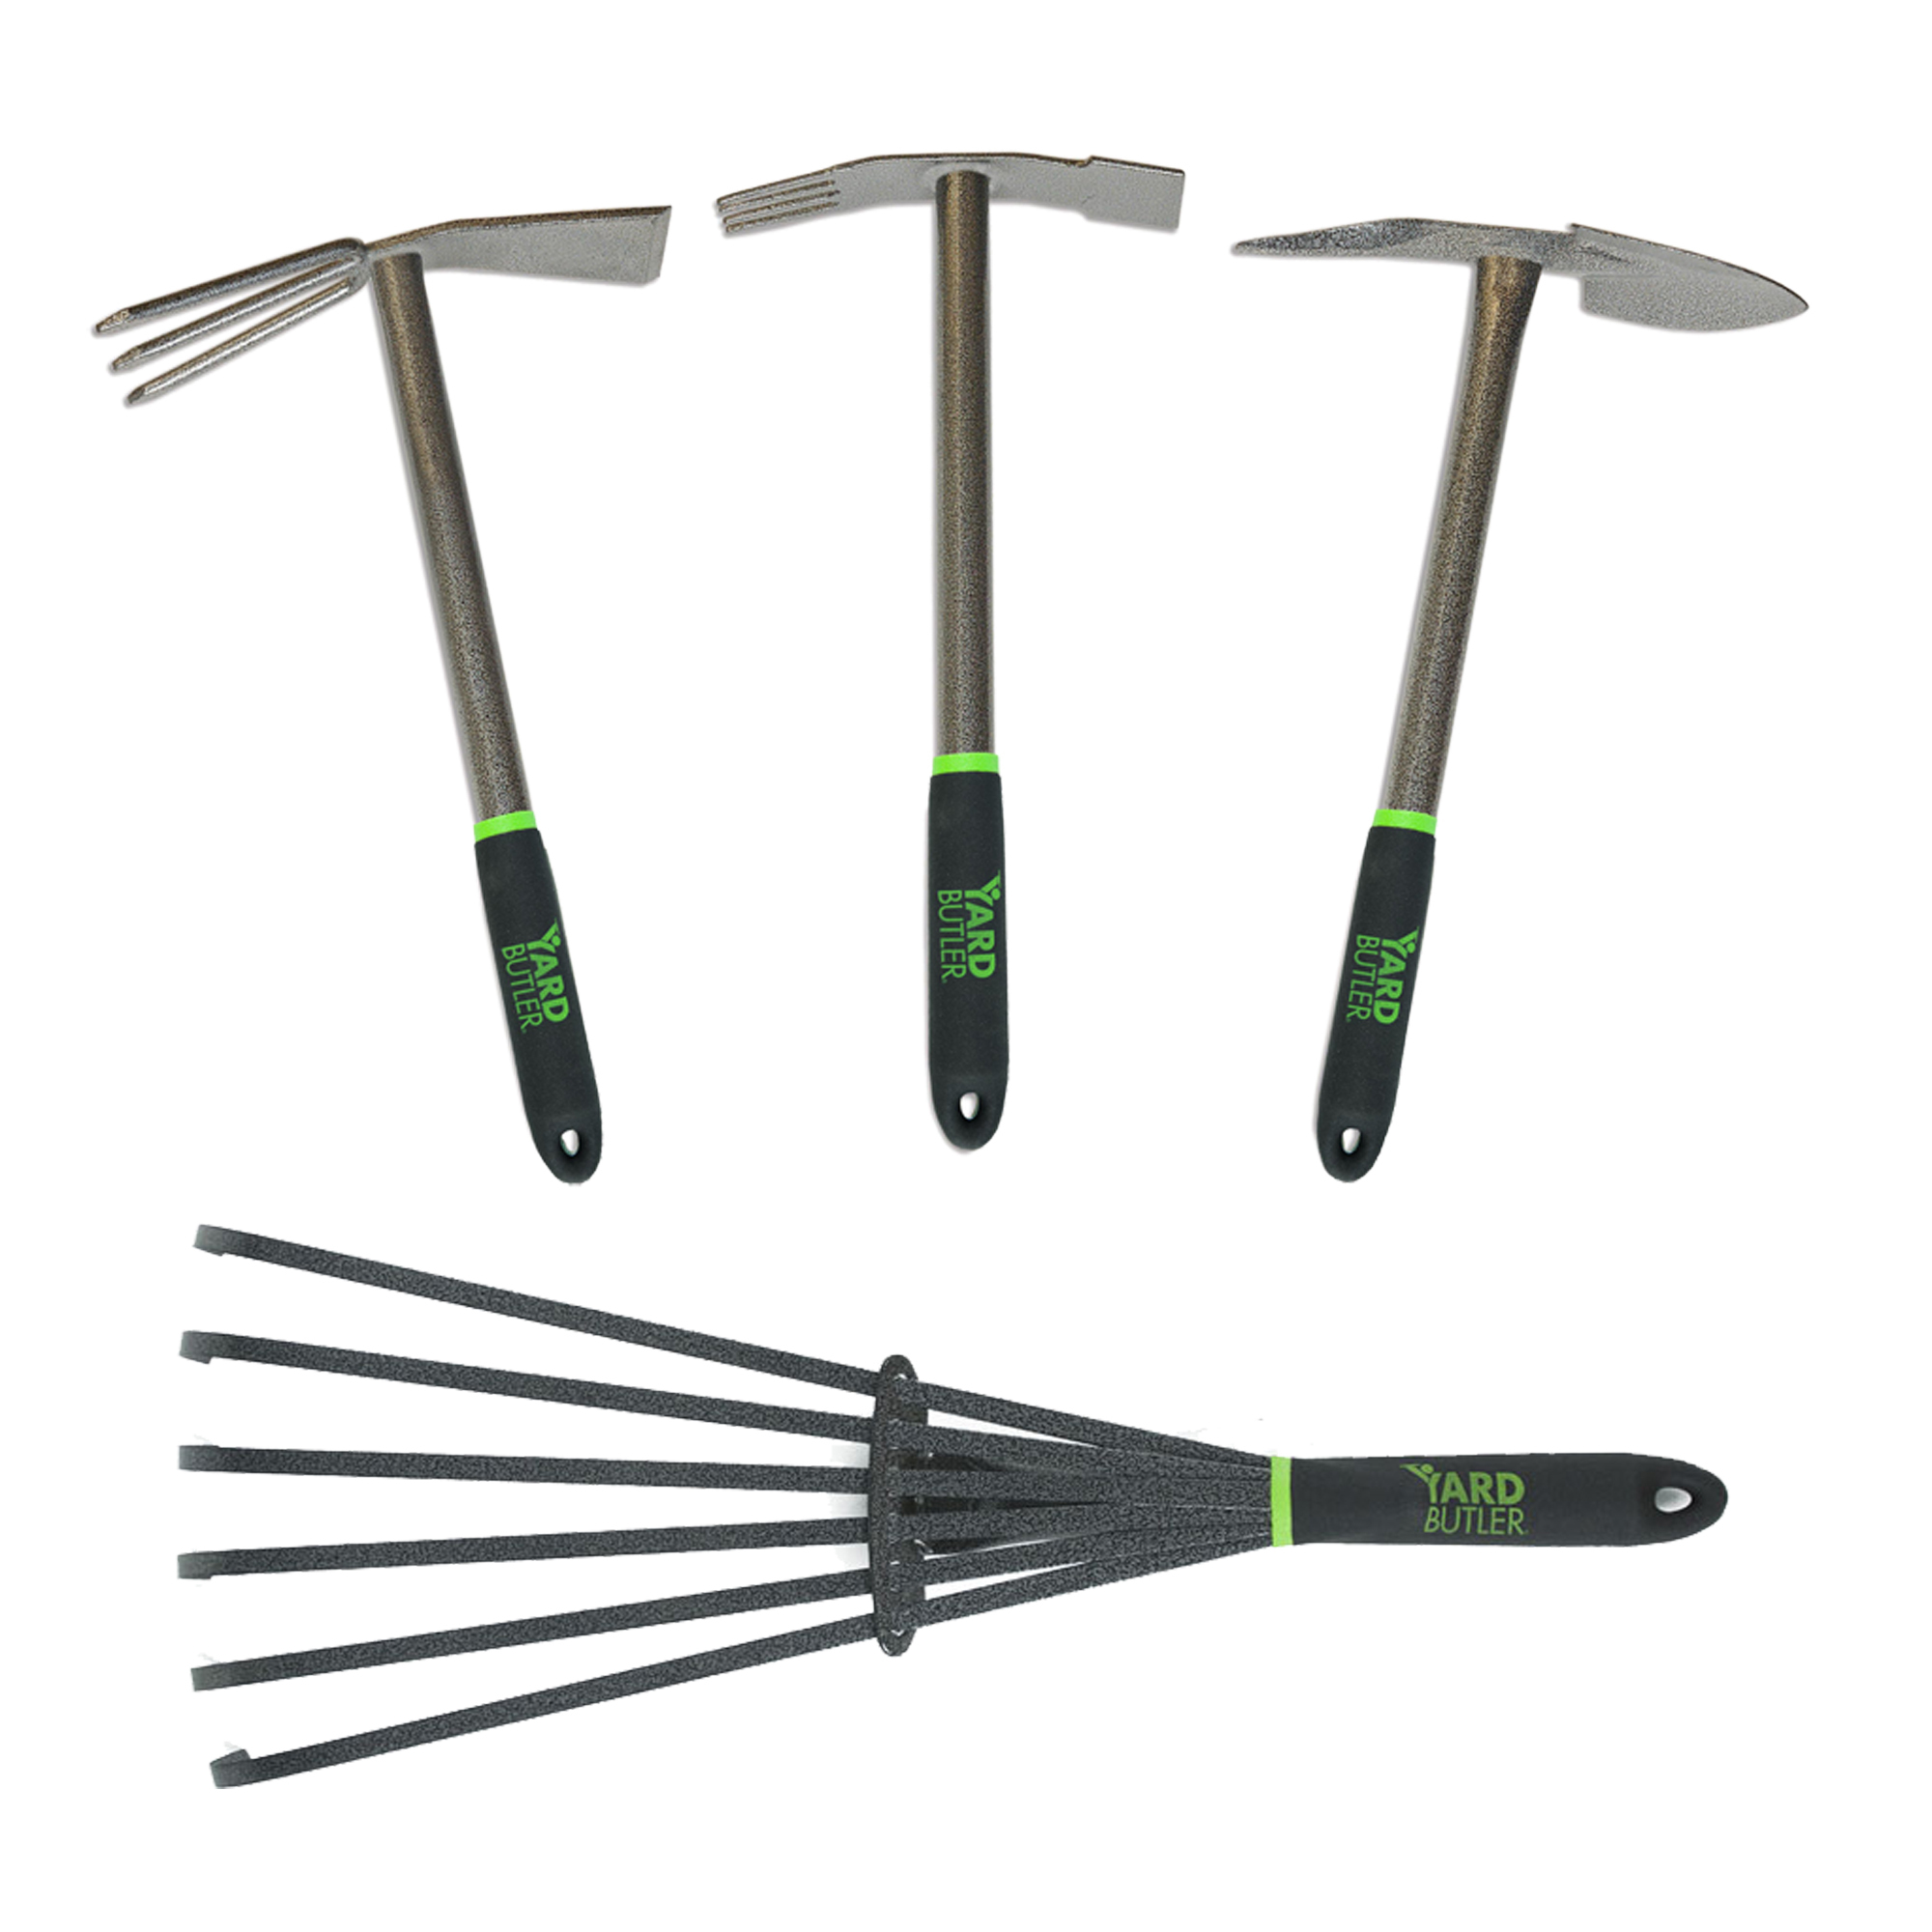 Yard Butler, Easy garden dream: 4-piece tool kit., Model ITT-4B